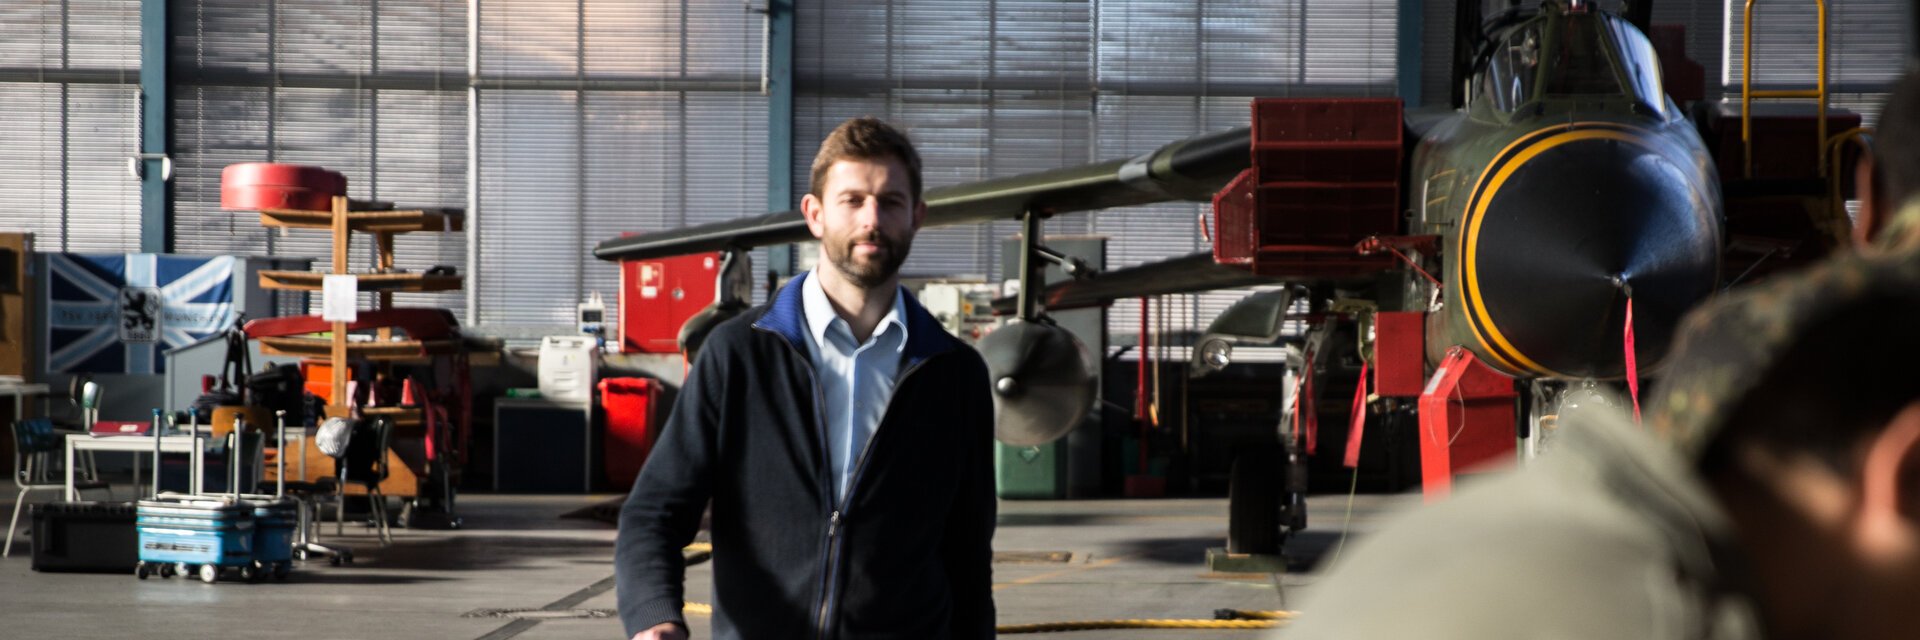 Ein Ingenieur geht durch eine Flugzeughalle zu Mitarbeitern